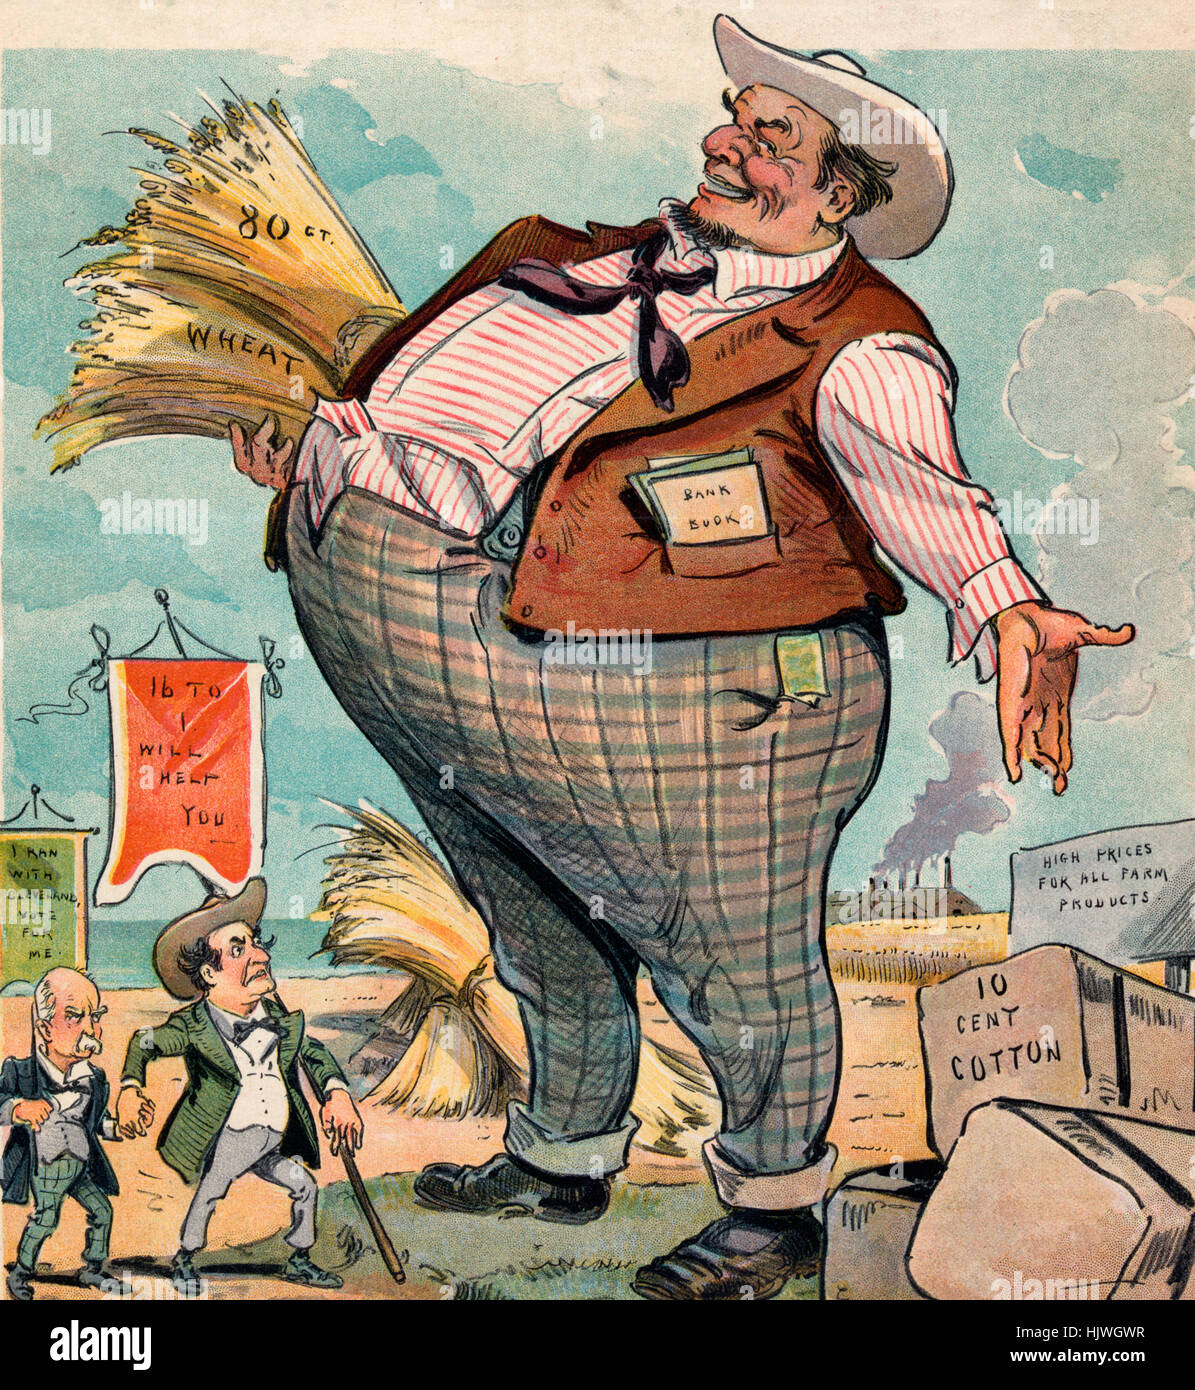 Er kann sie nicht sehen – politische Karikatur zeigt William Jennings Bryan tragen einen Banner, der besagt "16 bis 1 hilft Ihnen" und Adlai tragen einen Banner, der besagt "Ich lief mit Cleveland, Vote for me", steht vor gigantischen Landwirt, ungeheuren Ausmaßes auf Gewinne aus Weizen angewachsen, Baumwolle und anderen Bauernhof produzieren.  1900 Stockfoto